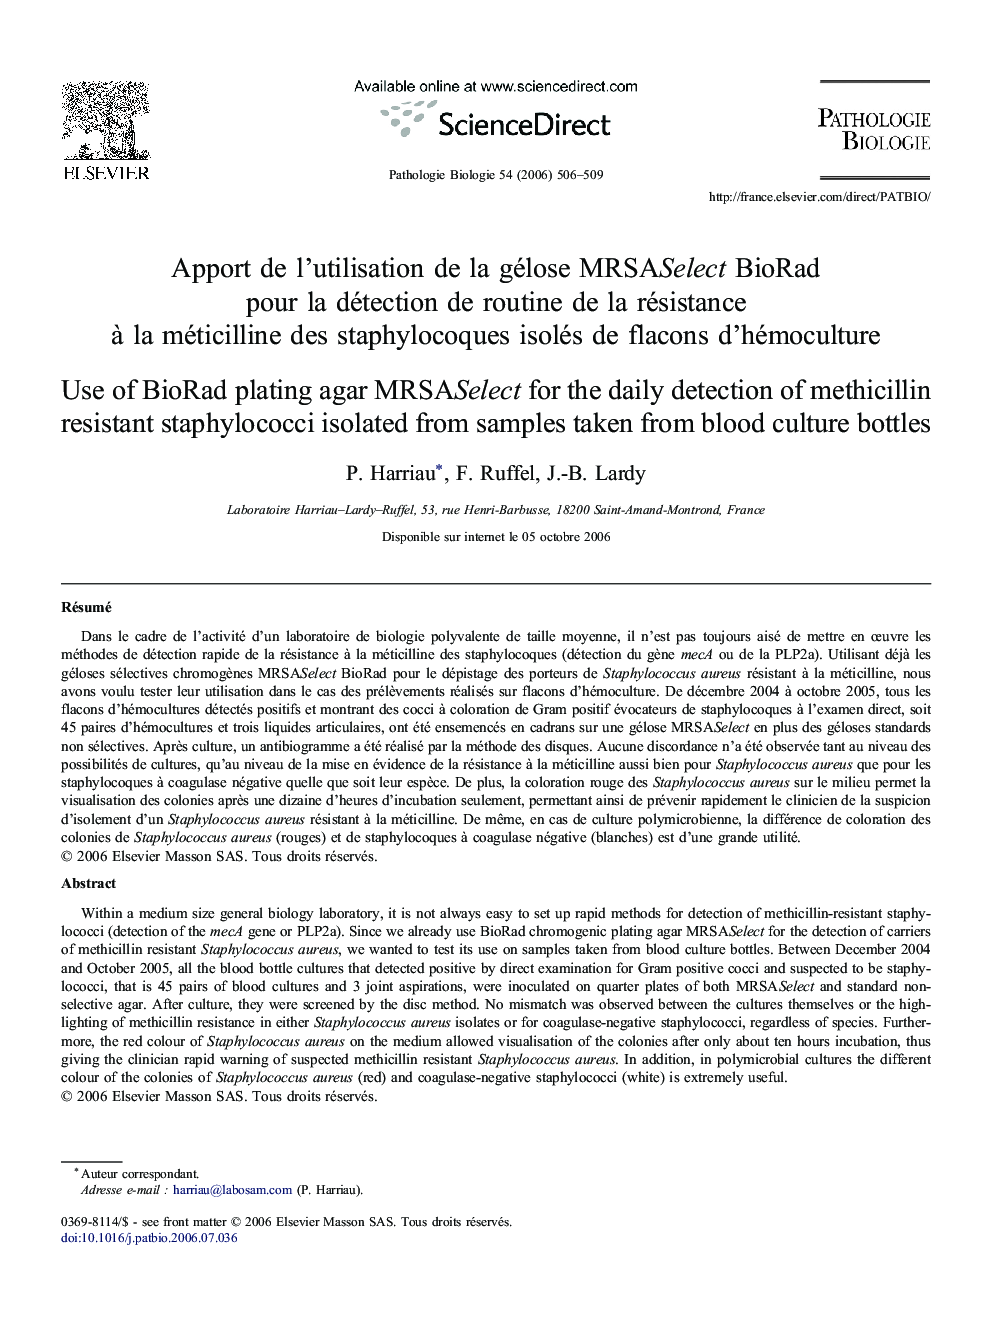 Apport de l'utilisation de la gélose MRSASelect BioRad pour la détection de routine de la résistance à la méticilline des staphylocoques isolés de flacons d'hémoculture